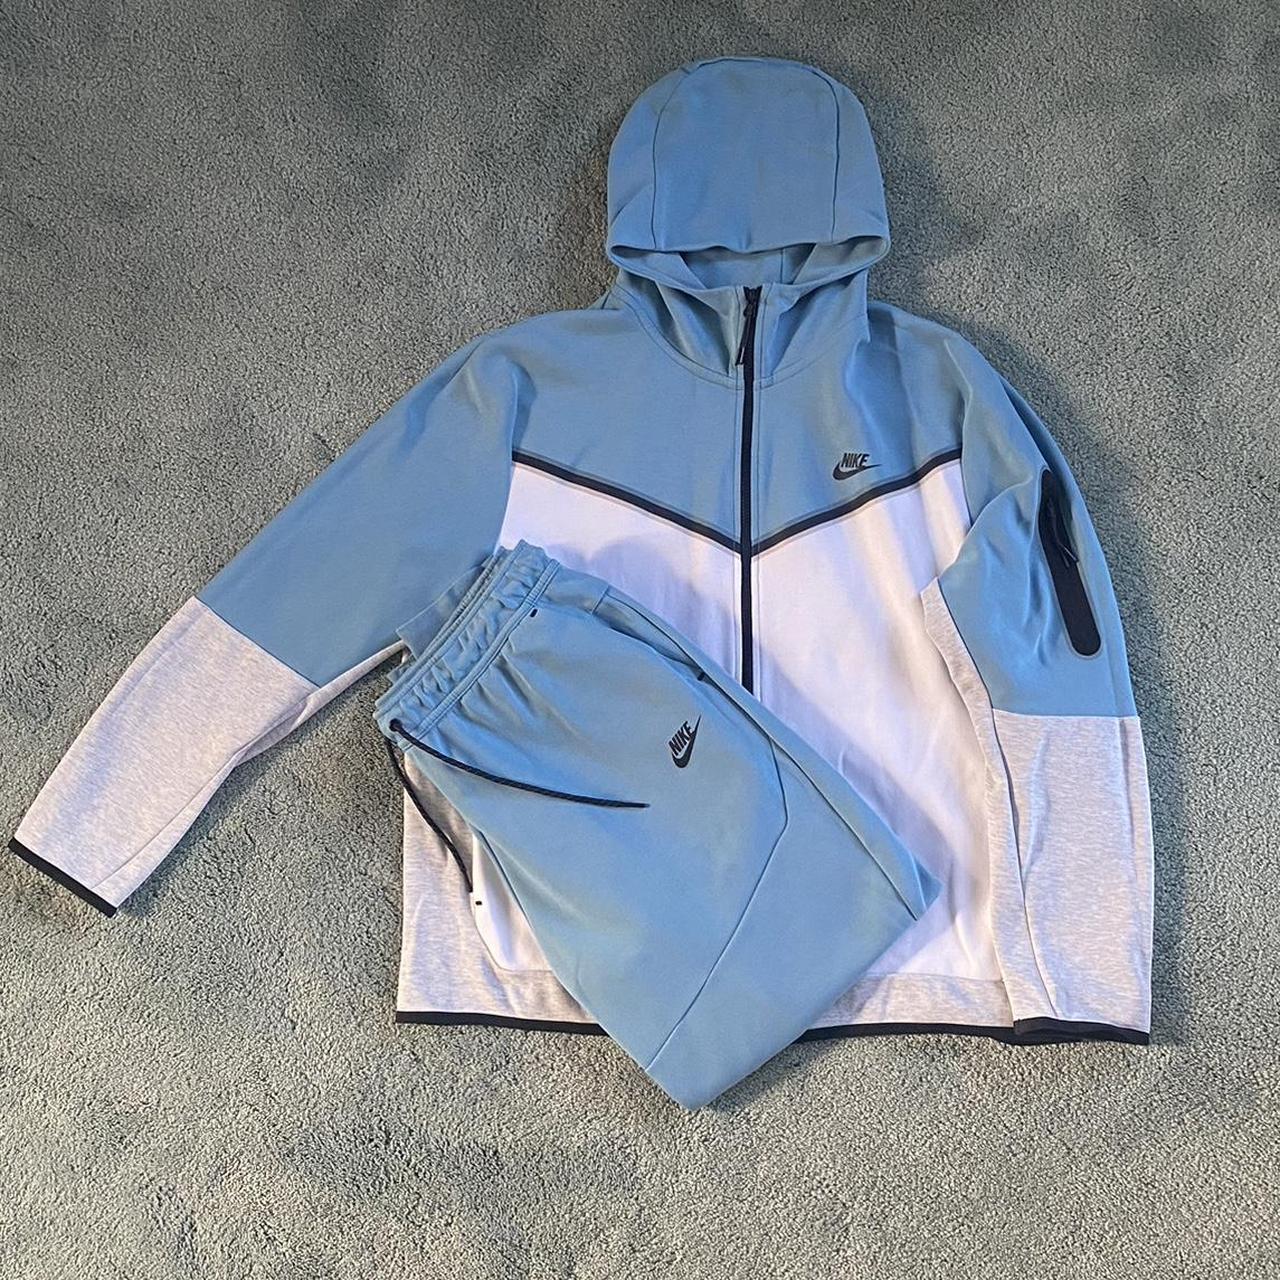 Nike tech fleece xl in blue grey white - Depop